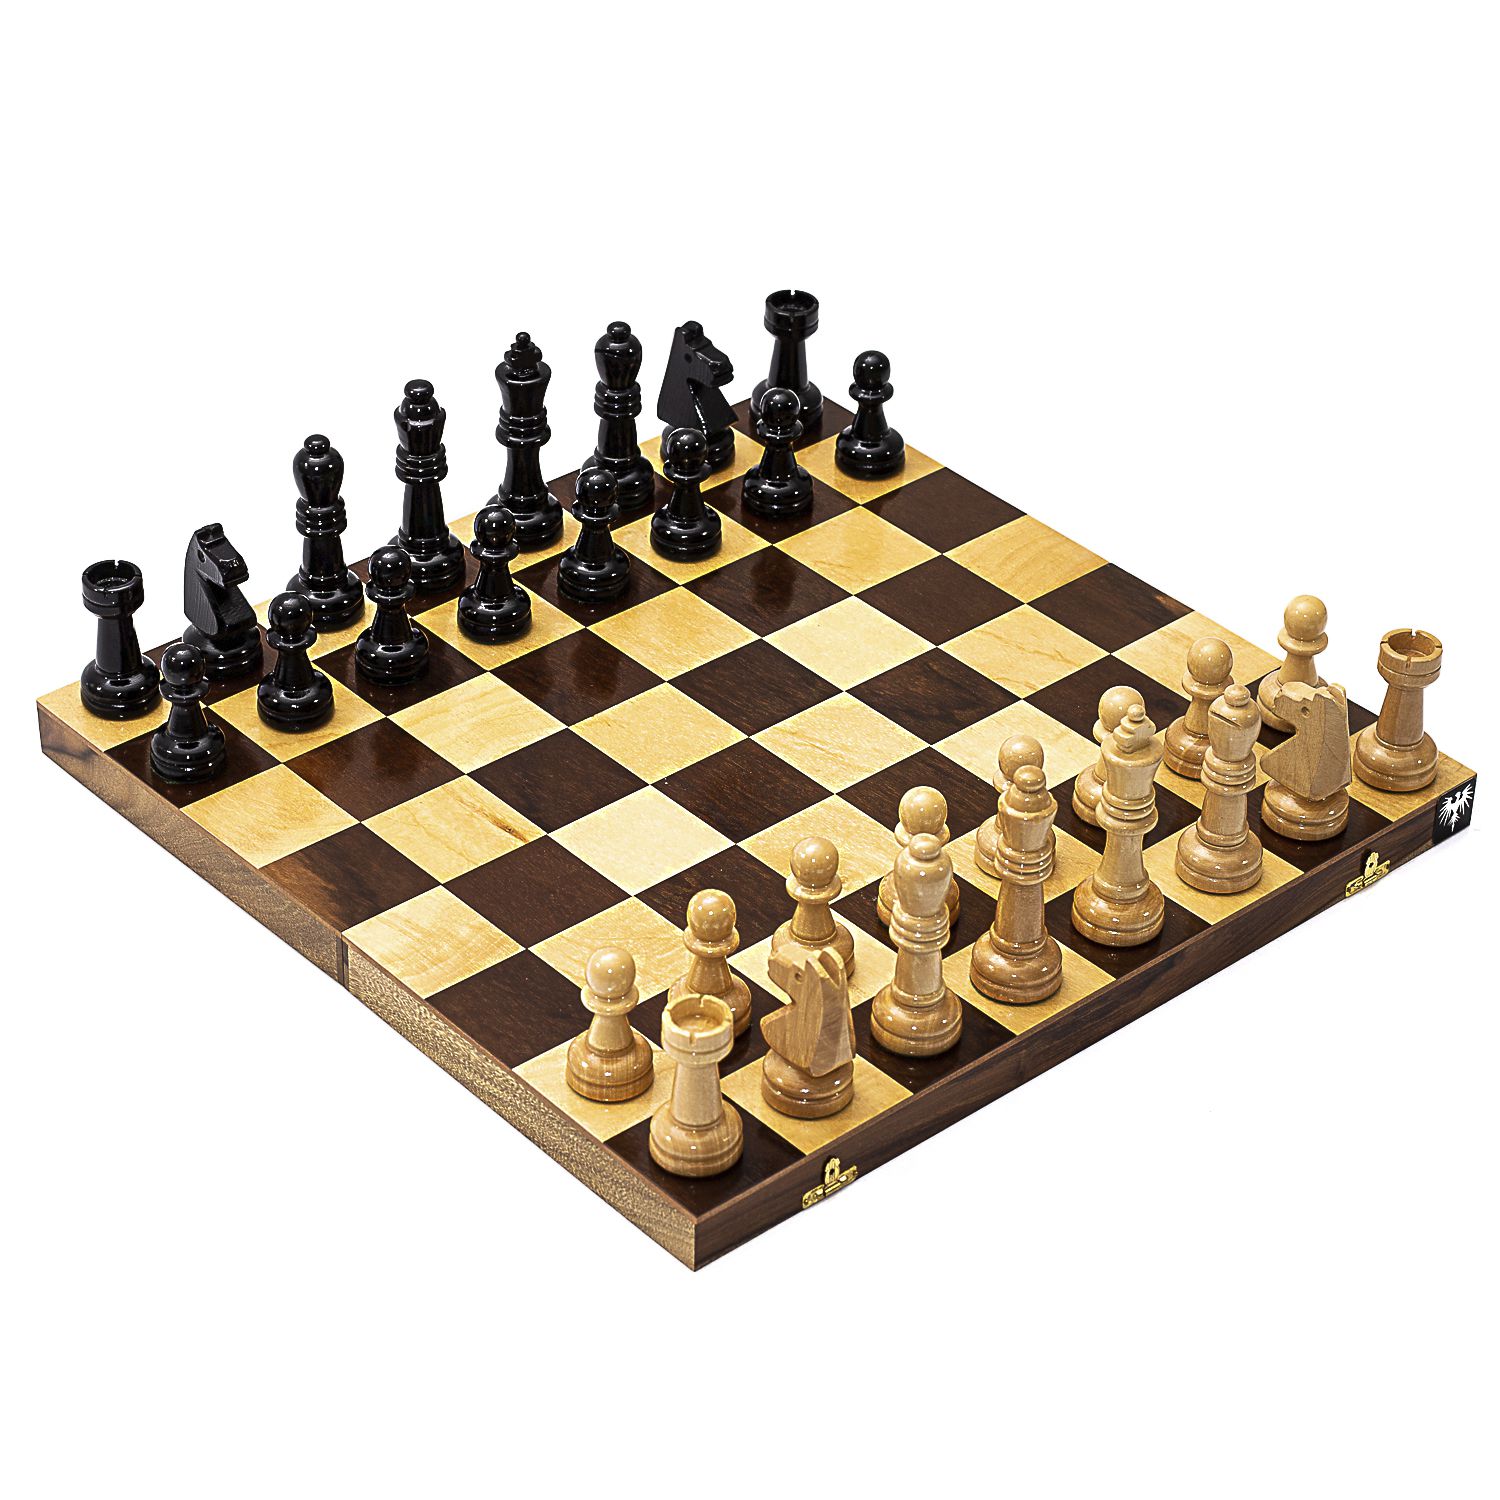 Jogos de Tabuleiro: Xadrez - um jogo de tabuleiro